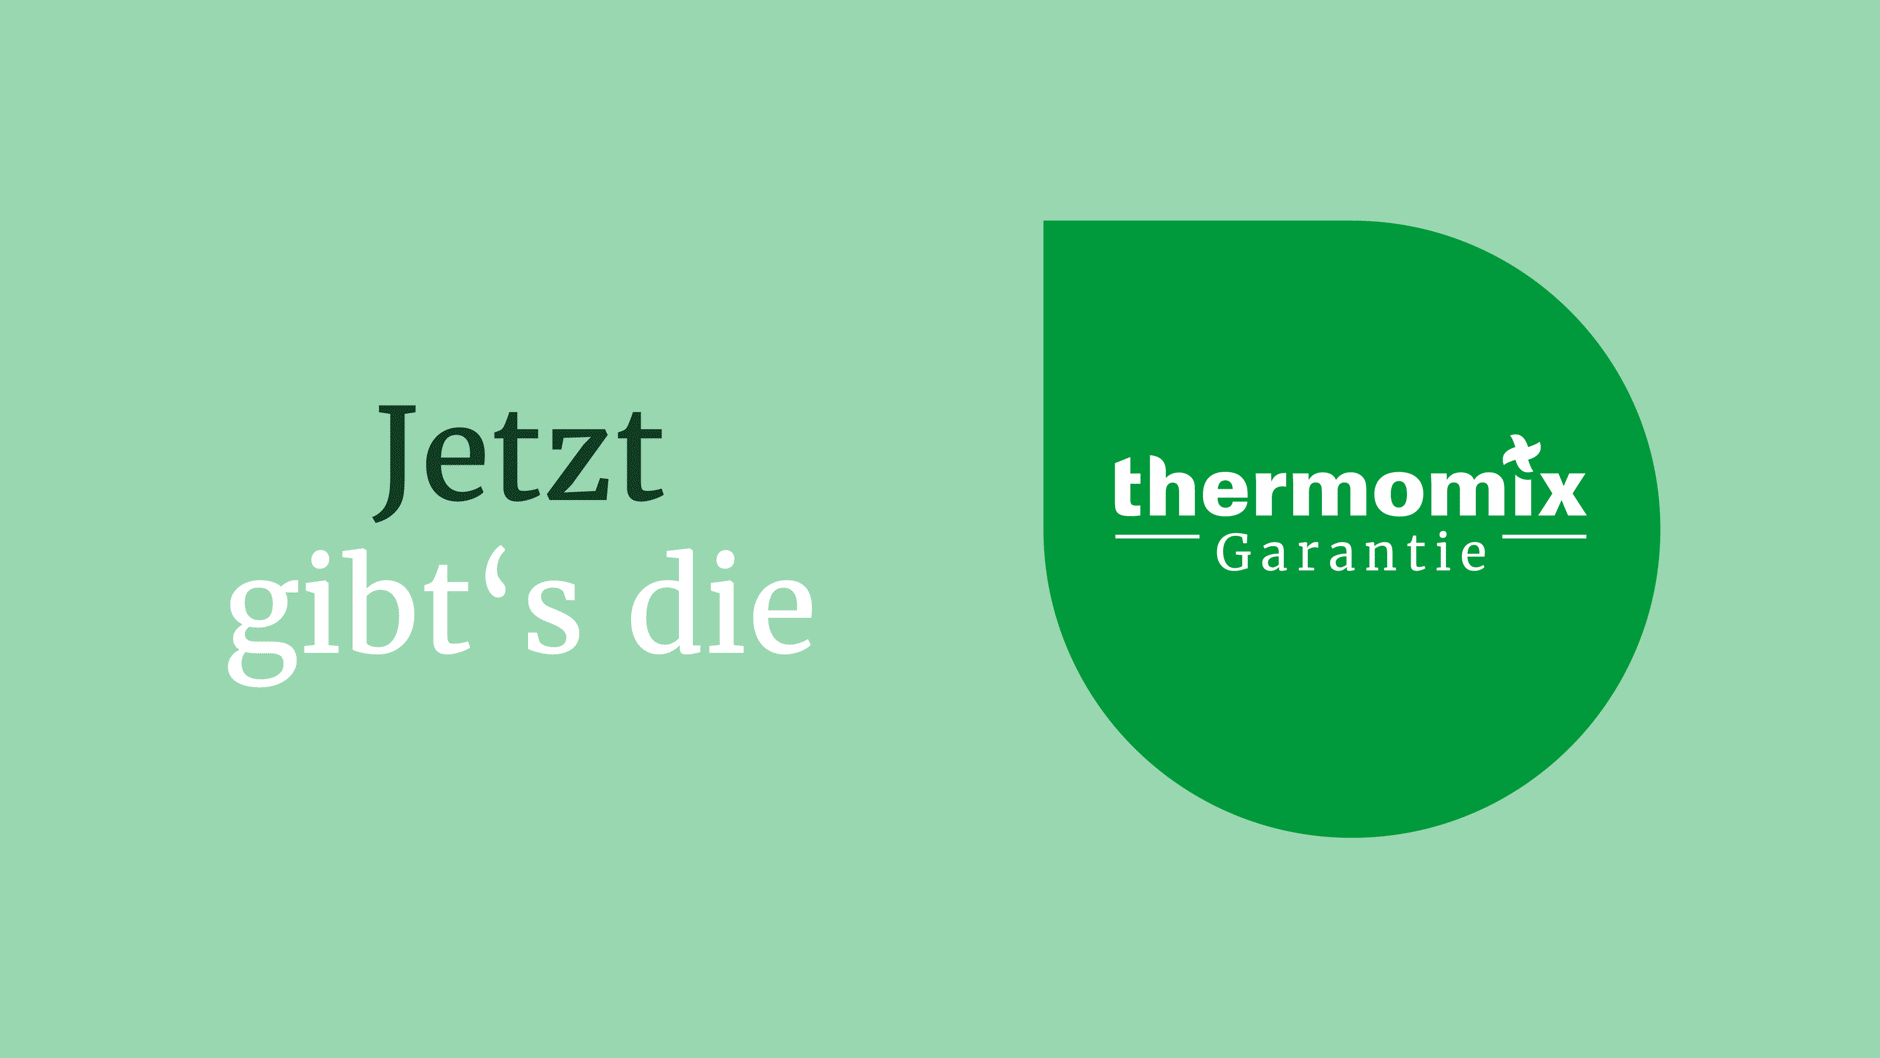 thermomix garantie